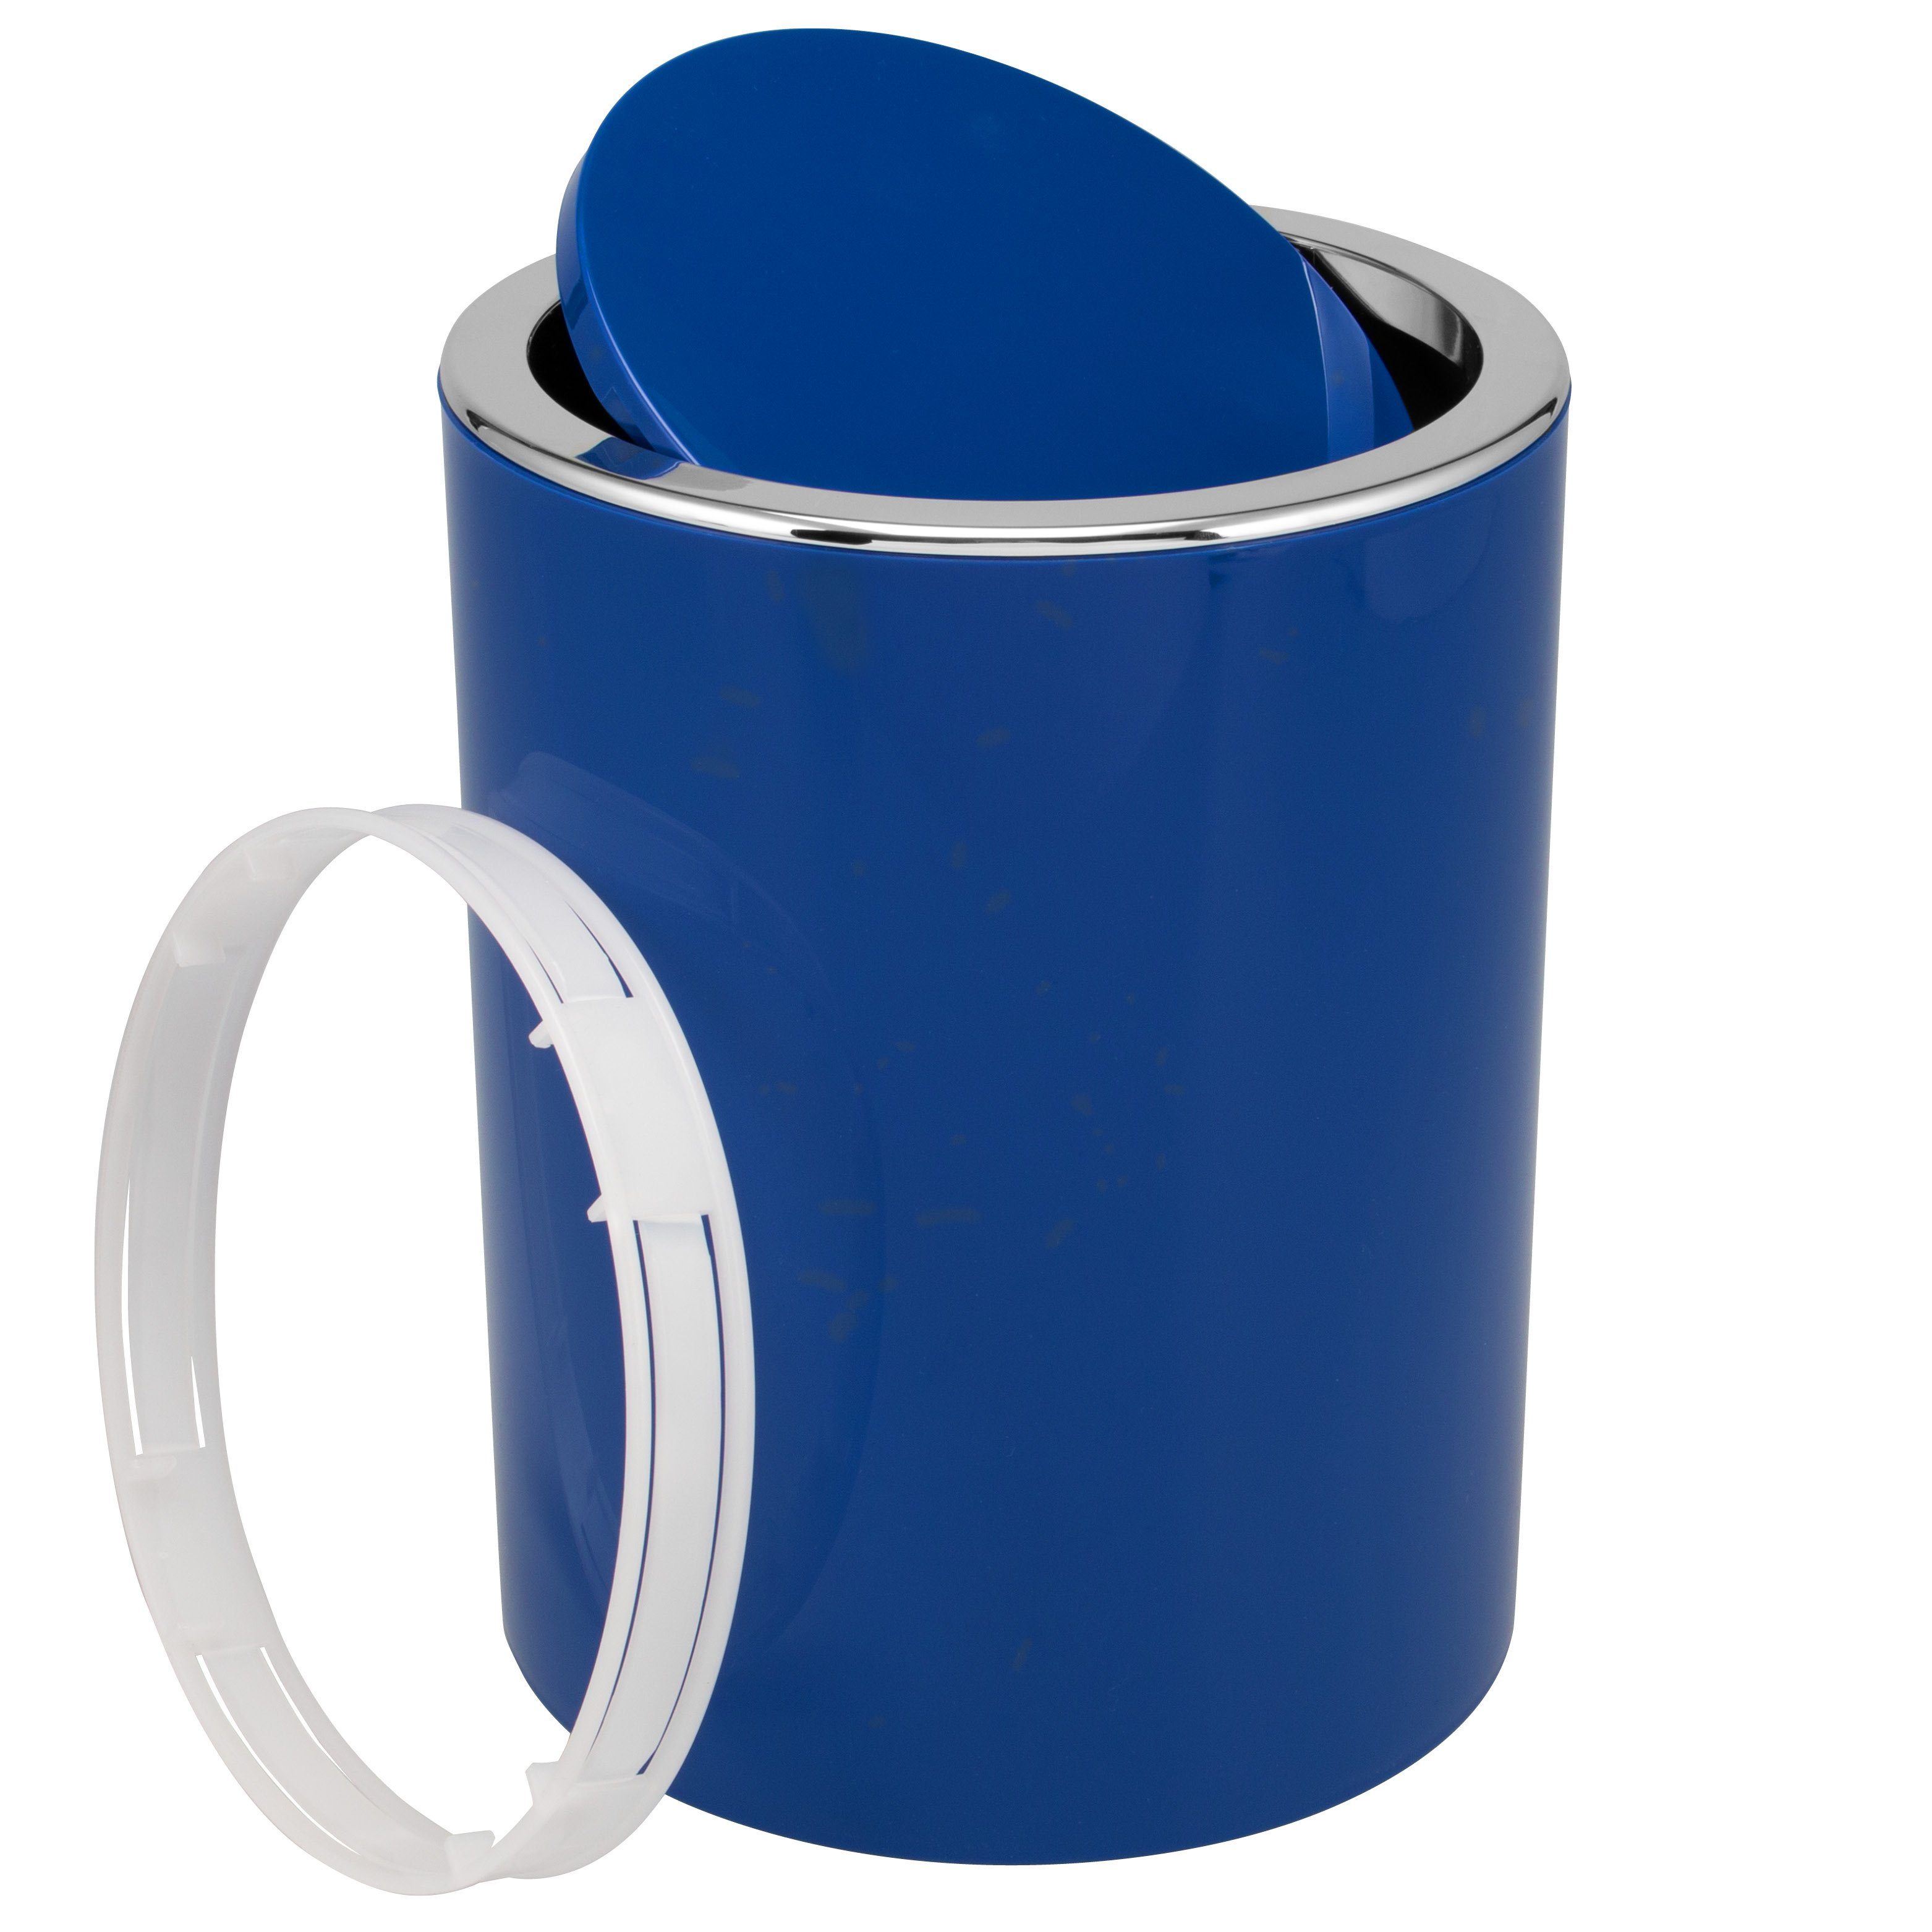 Blaue Toilettenpapierhalter online kaufen | OTTO